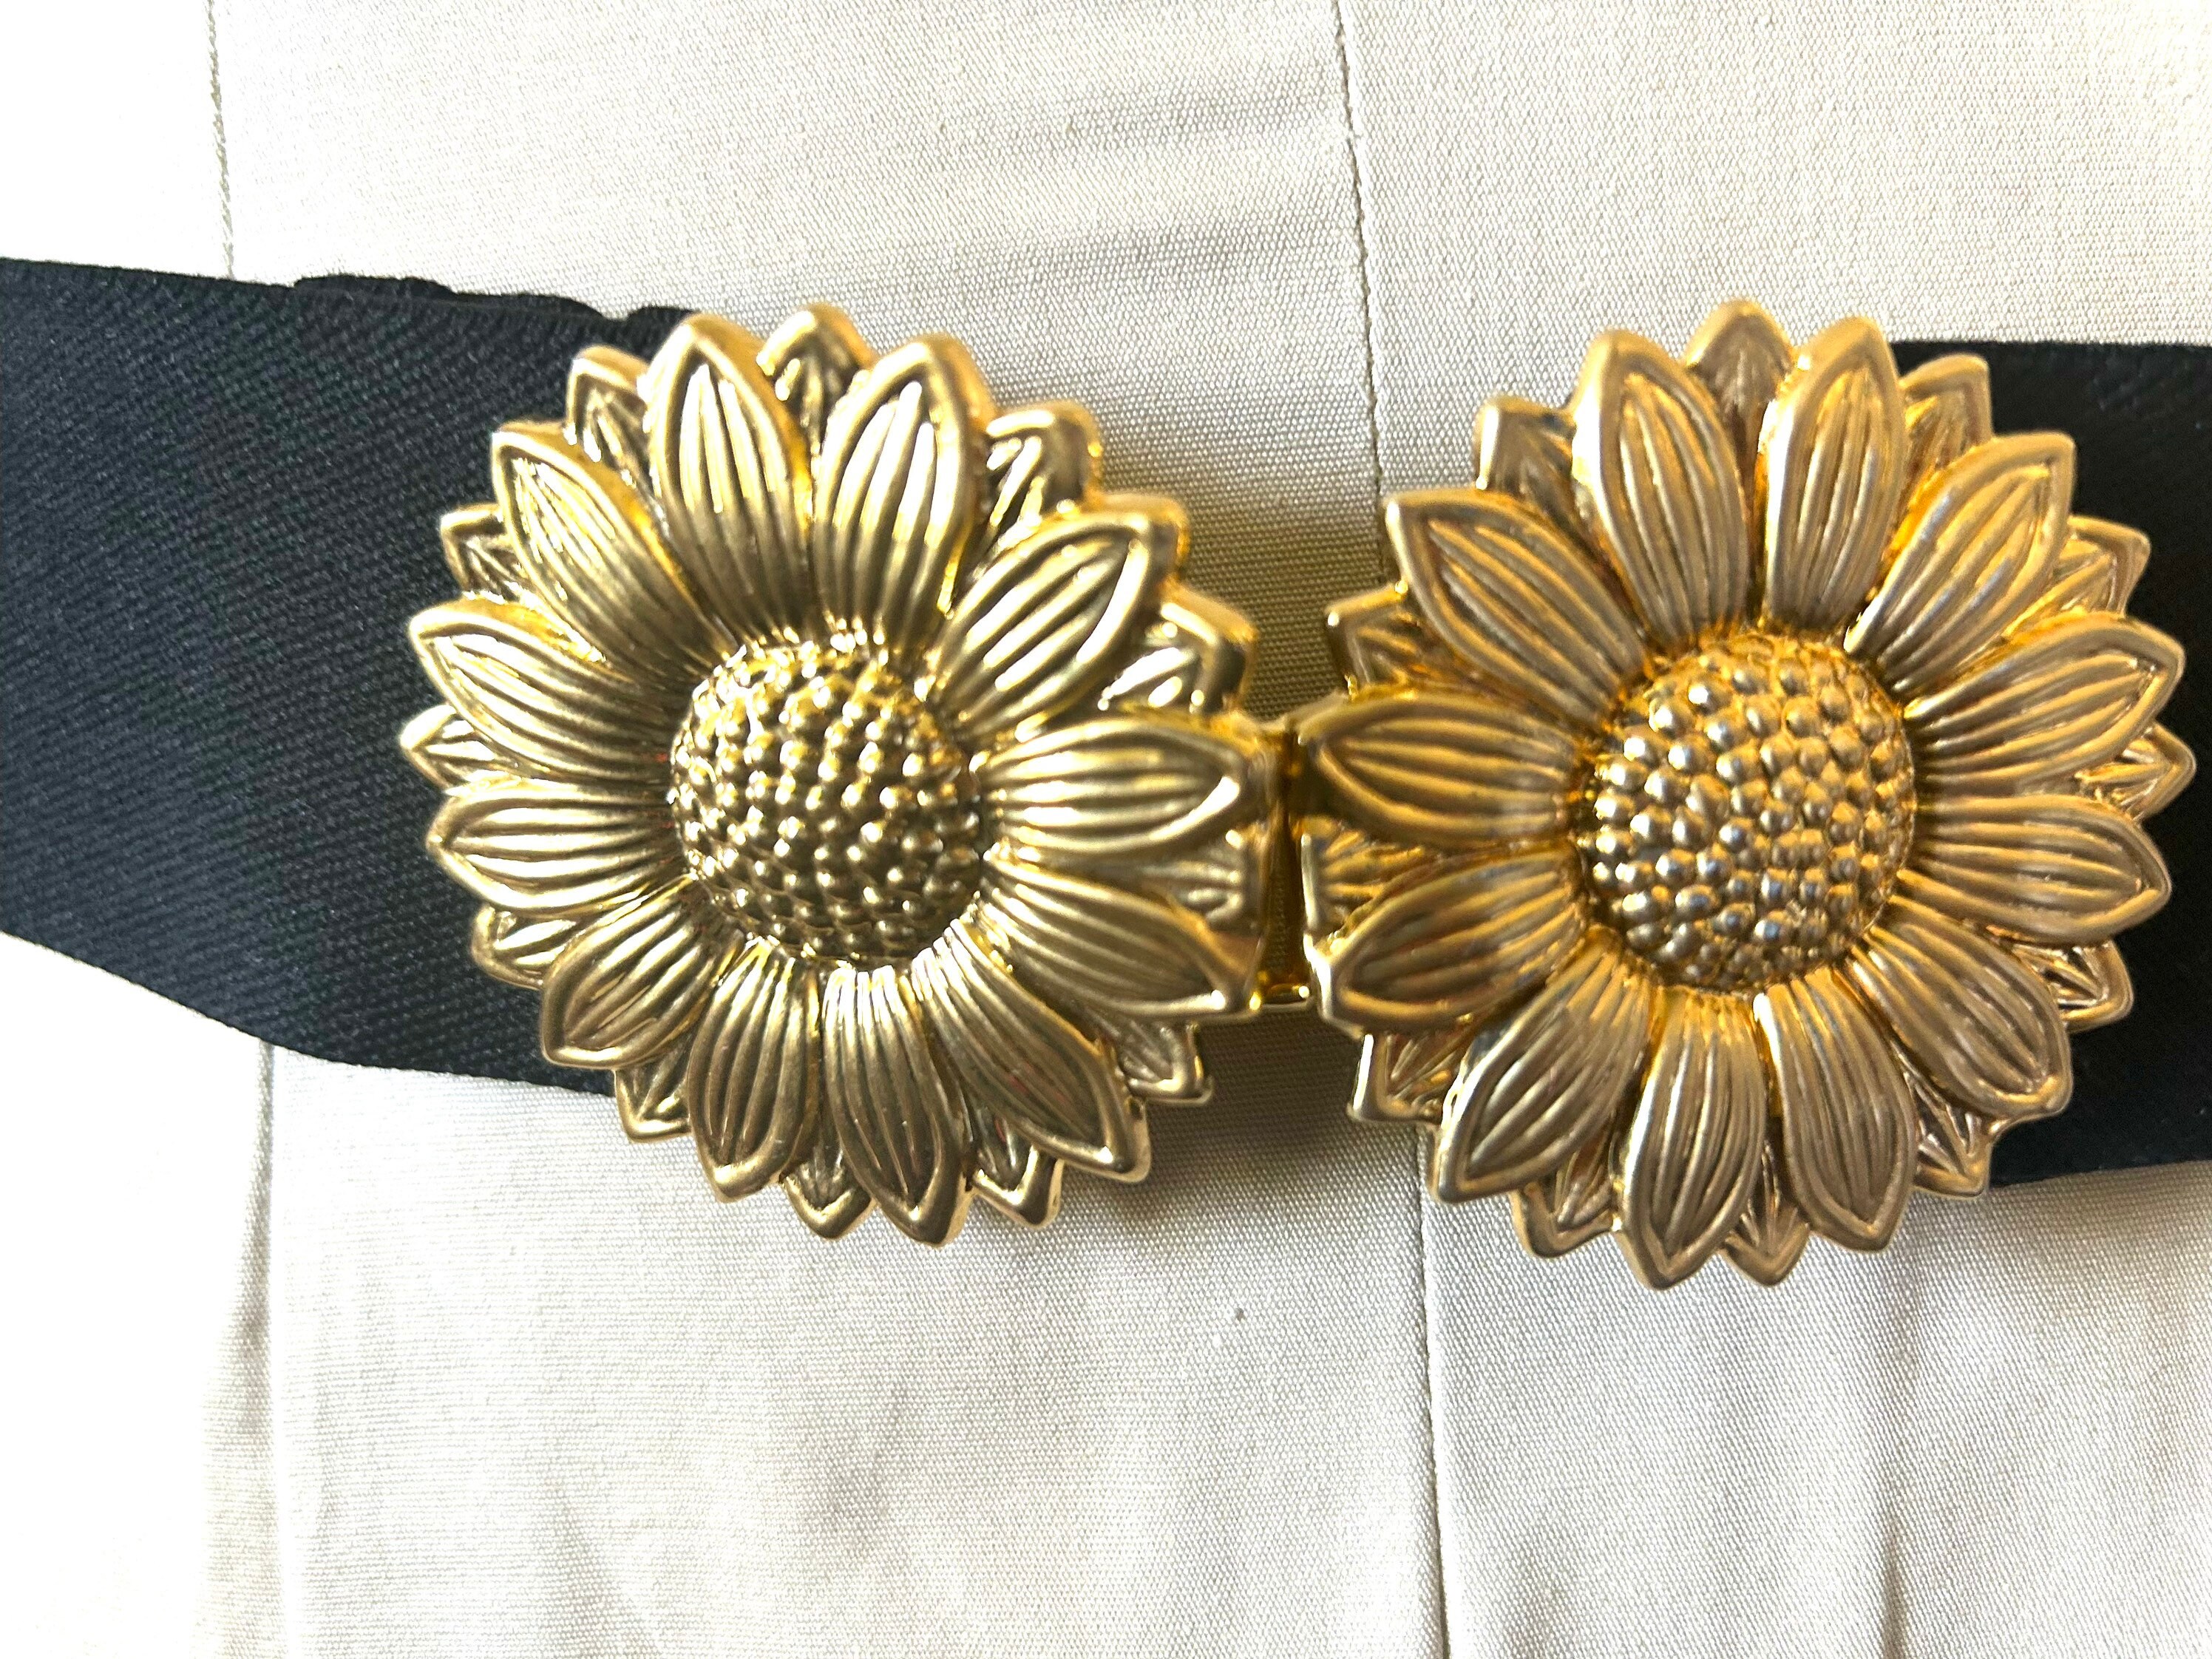 Sunflower Belt – TTT-Custom-Leather